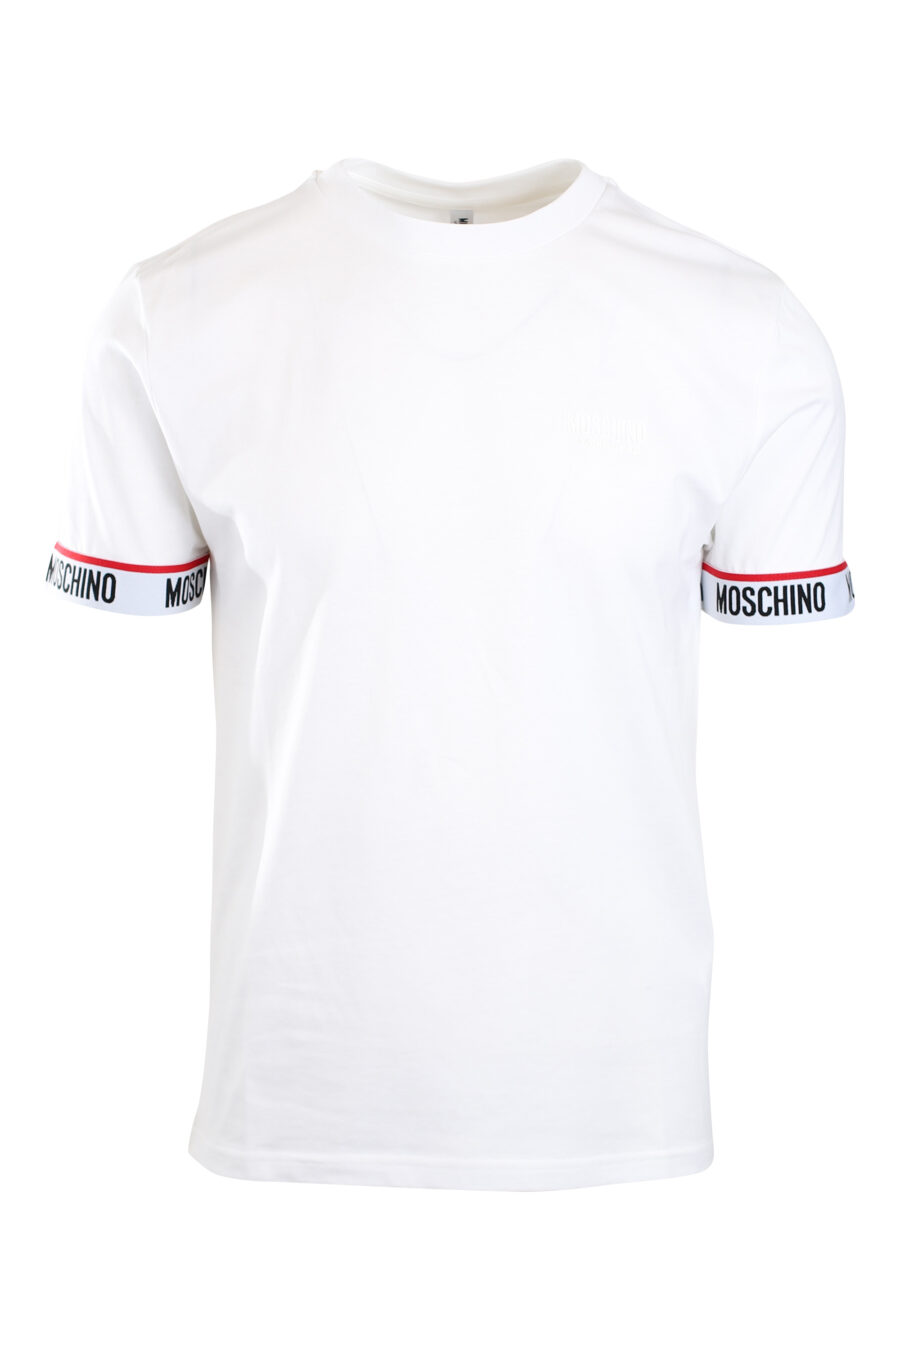 Weißes T-Shirt mit Logoband am Ärmel und einfarbigem Mini-Logo - IMG 2174